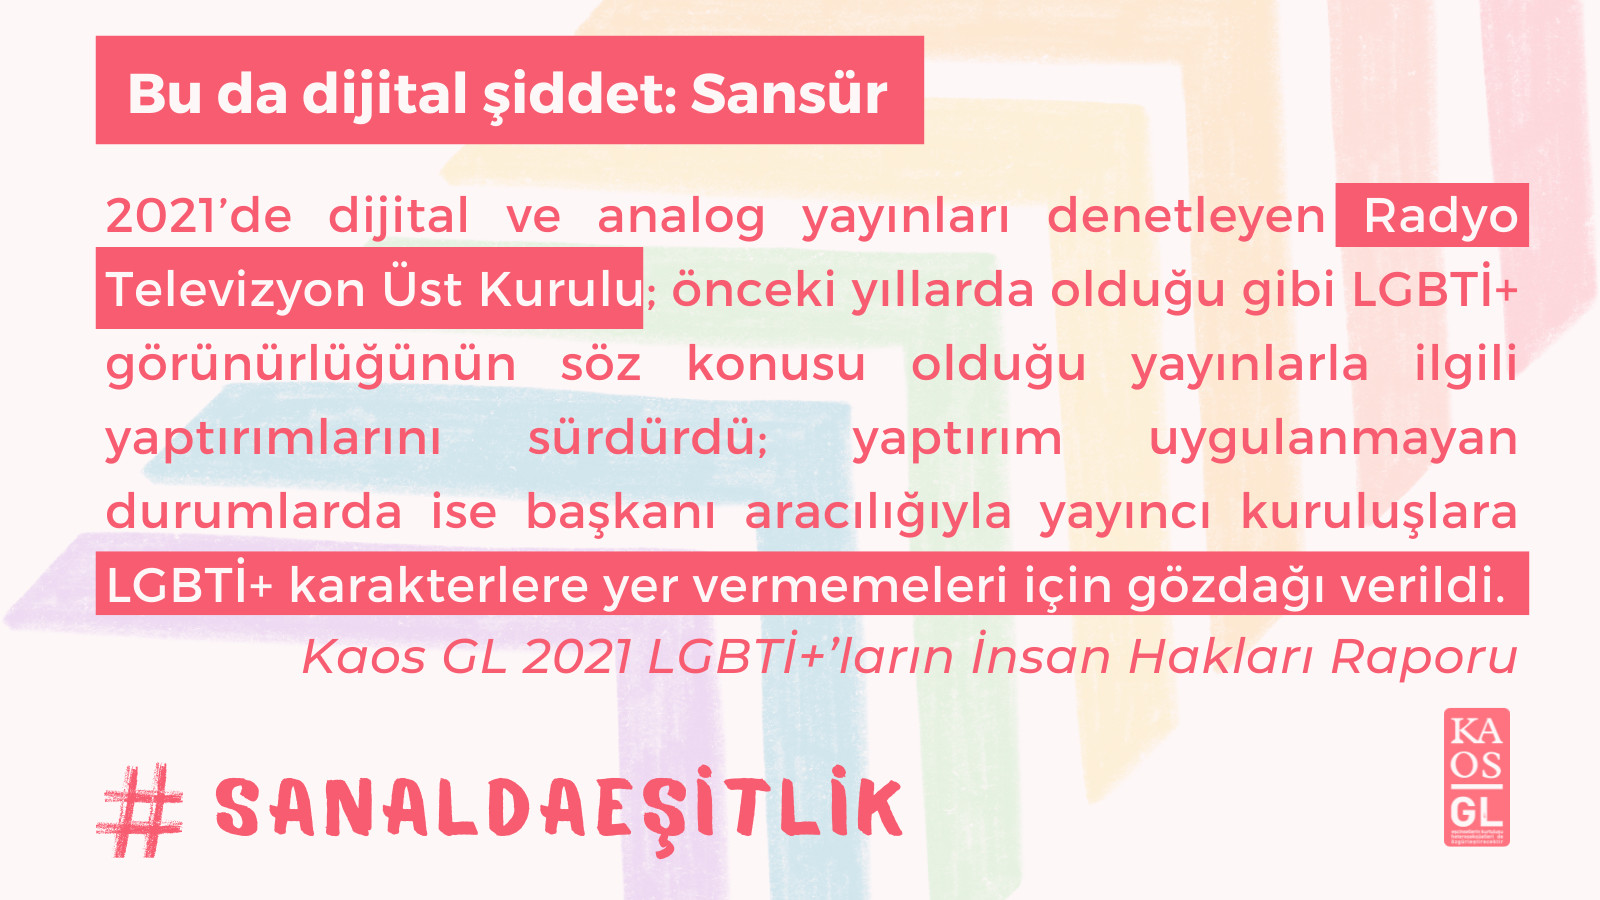 Bu da dijital şiddet: RTÜK’ün LGBTİ+’ları hedef göstermesi ve sansür! | Kaos GL - LGBTİ+ Haber Portalı Haber